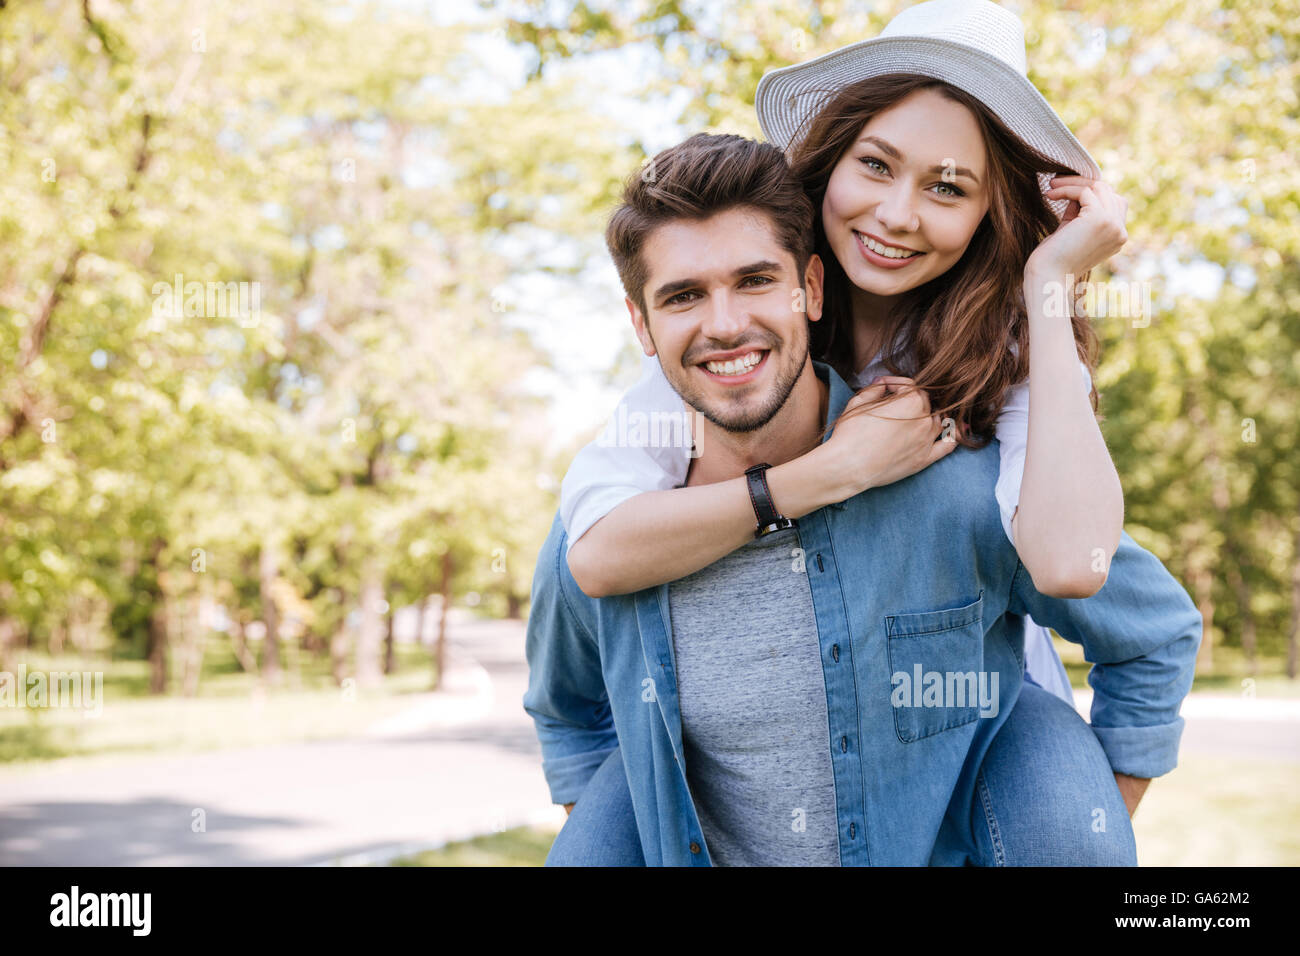 Porträt eines glücklichen jungen lächelnd Paares Spaß im Freien im park Stockfoto